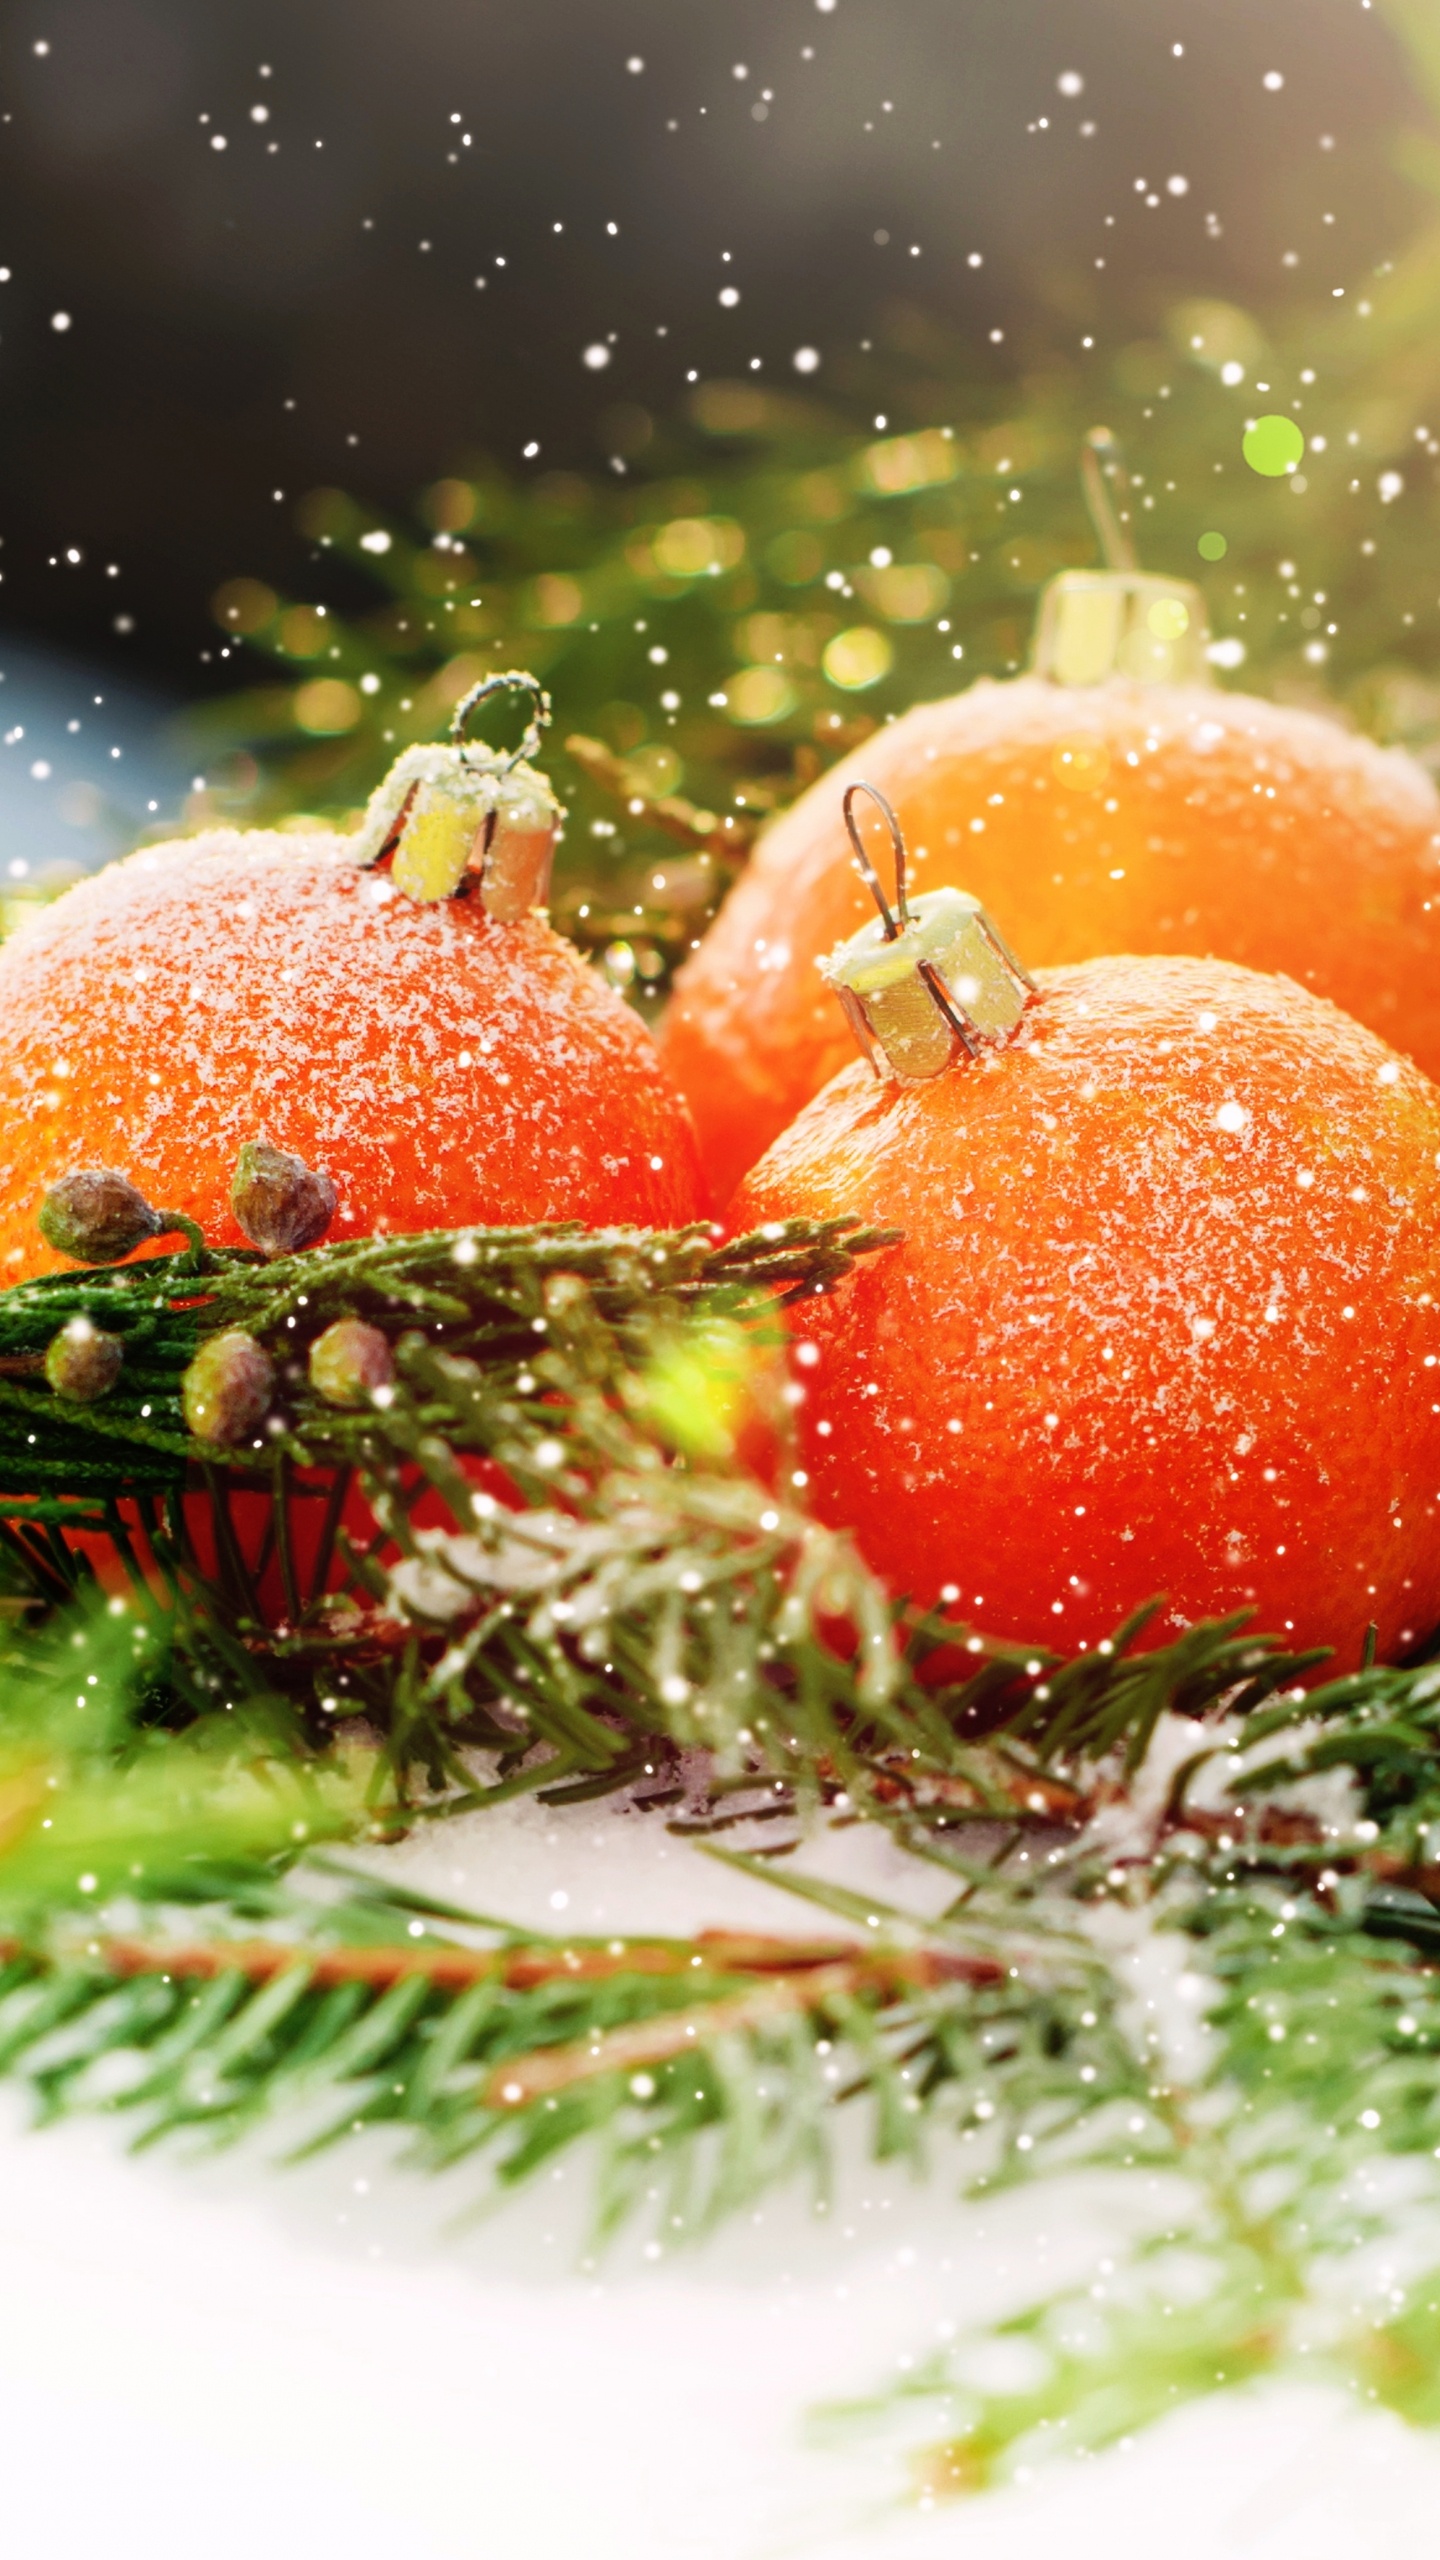 Le Jour De Noël, Nouvelle Année, la Nourriture Végétarienne, Aliment, Fruits. Wallpaper in 1440x2560 Resolution